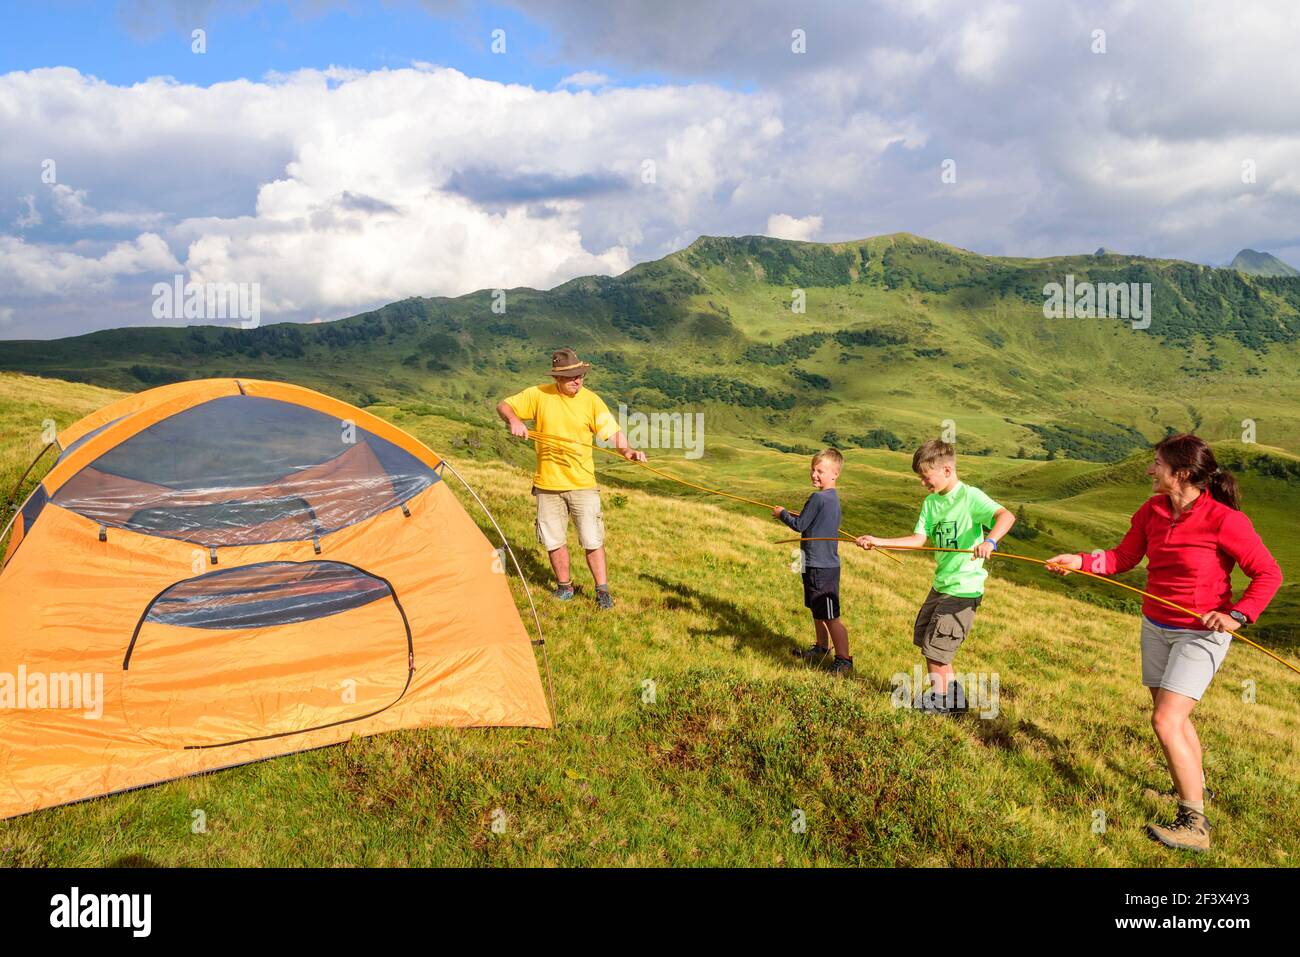 La configuration de la tente pour une nuitée dans les montagnes Banque D'Images